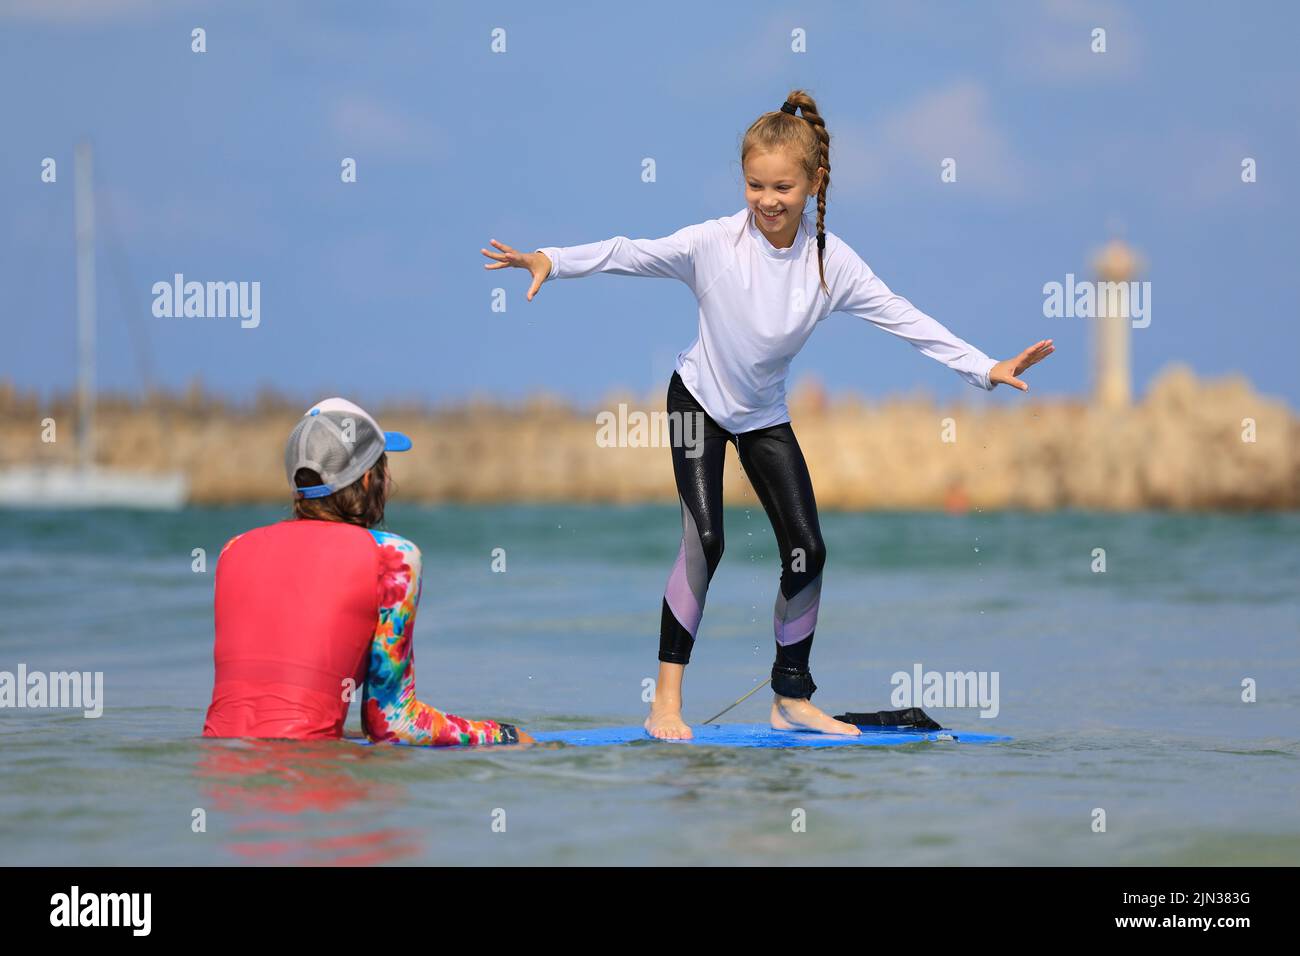 Junge Surfer lernen mit einem Surflehrer in der Surfschule auf dem Surfbrett zu reiten. Aktiver Familienleben, Kinder Wassersport Unterricht Stockfoto